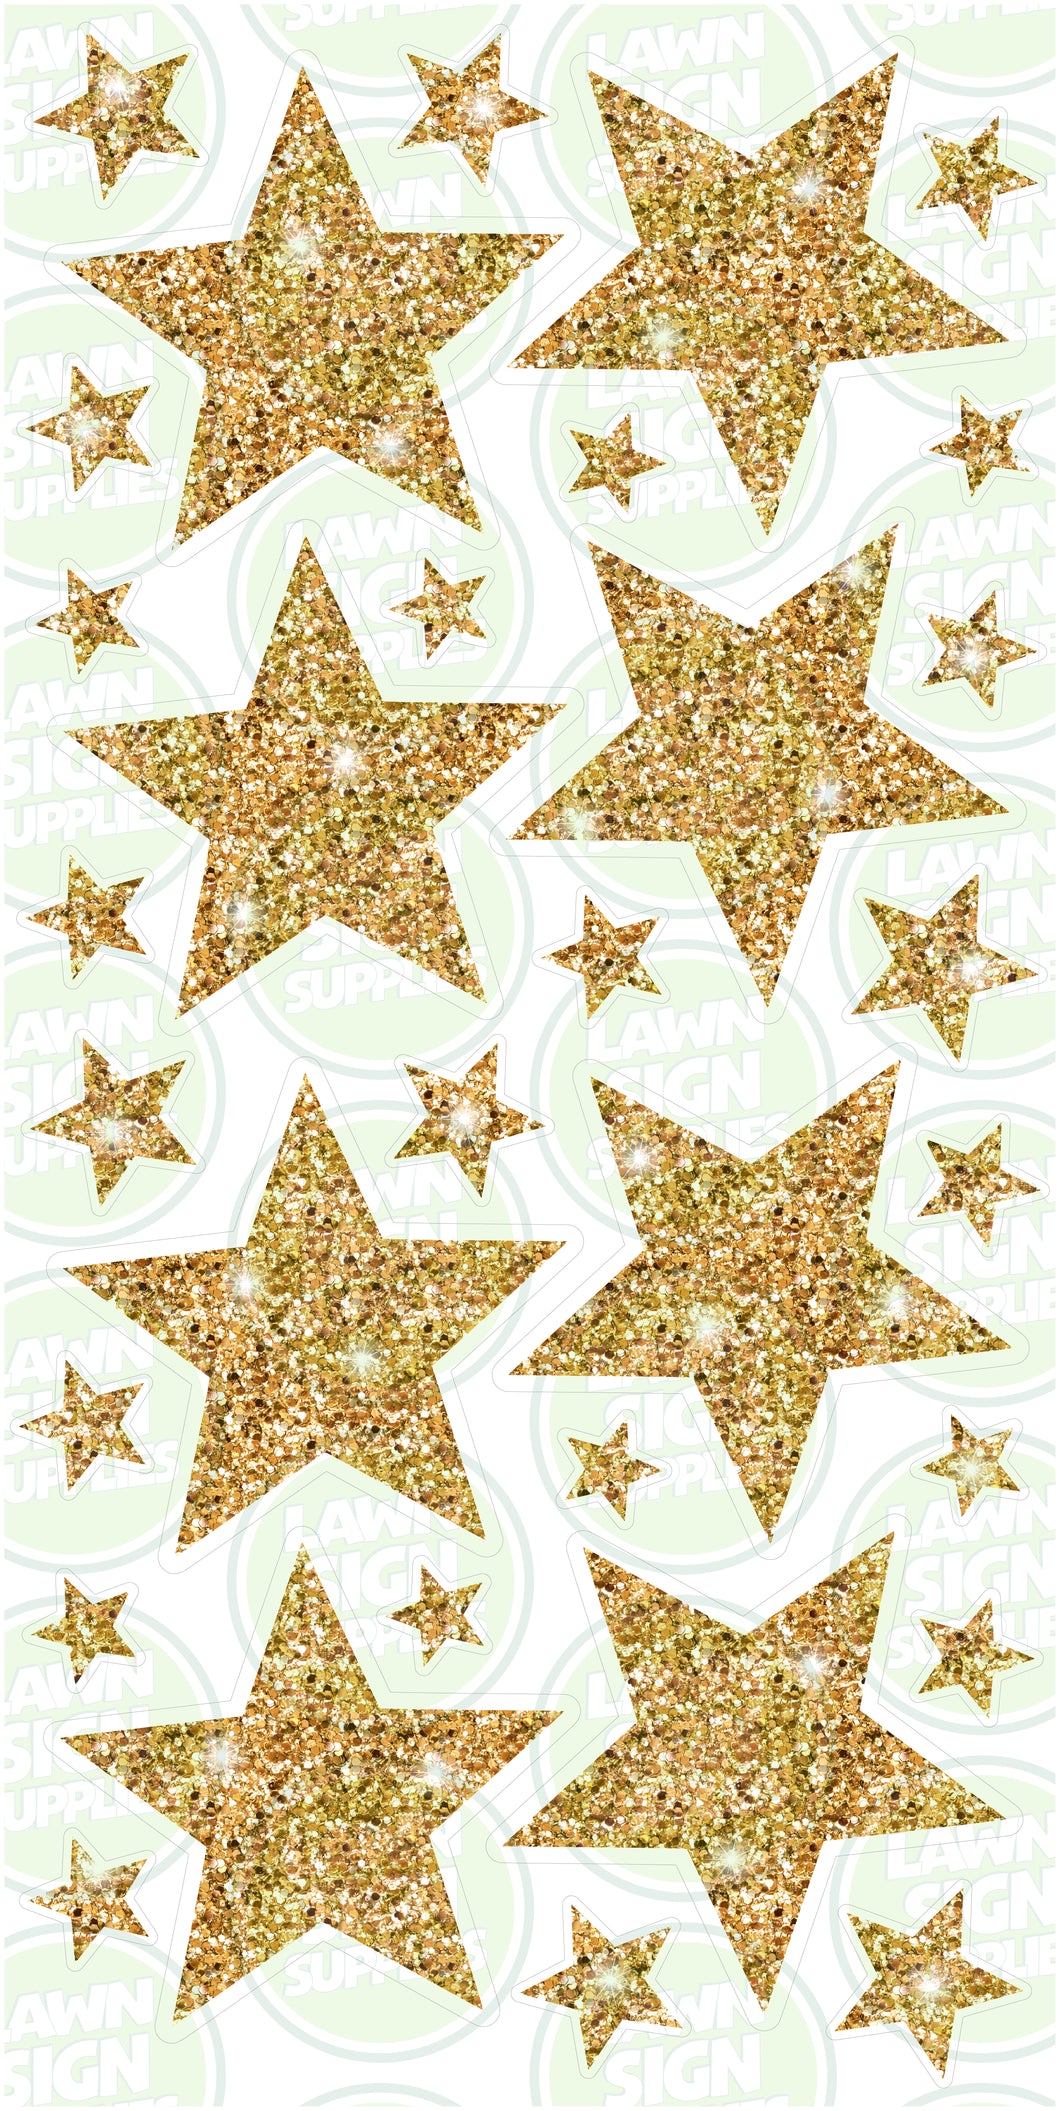 STARS - GOLD GLITTER SPARKLE